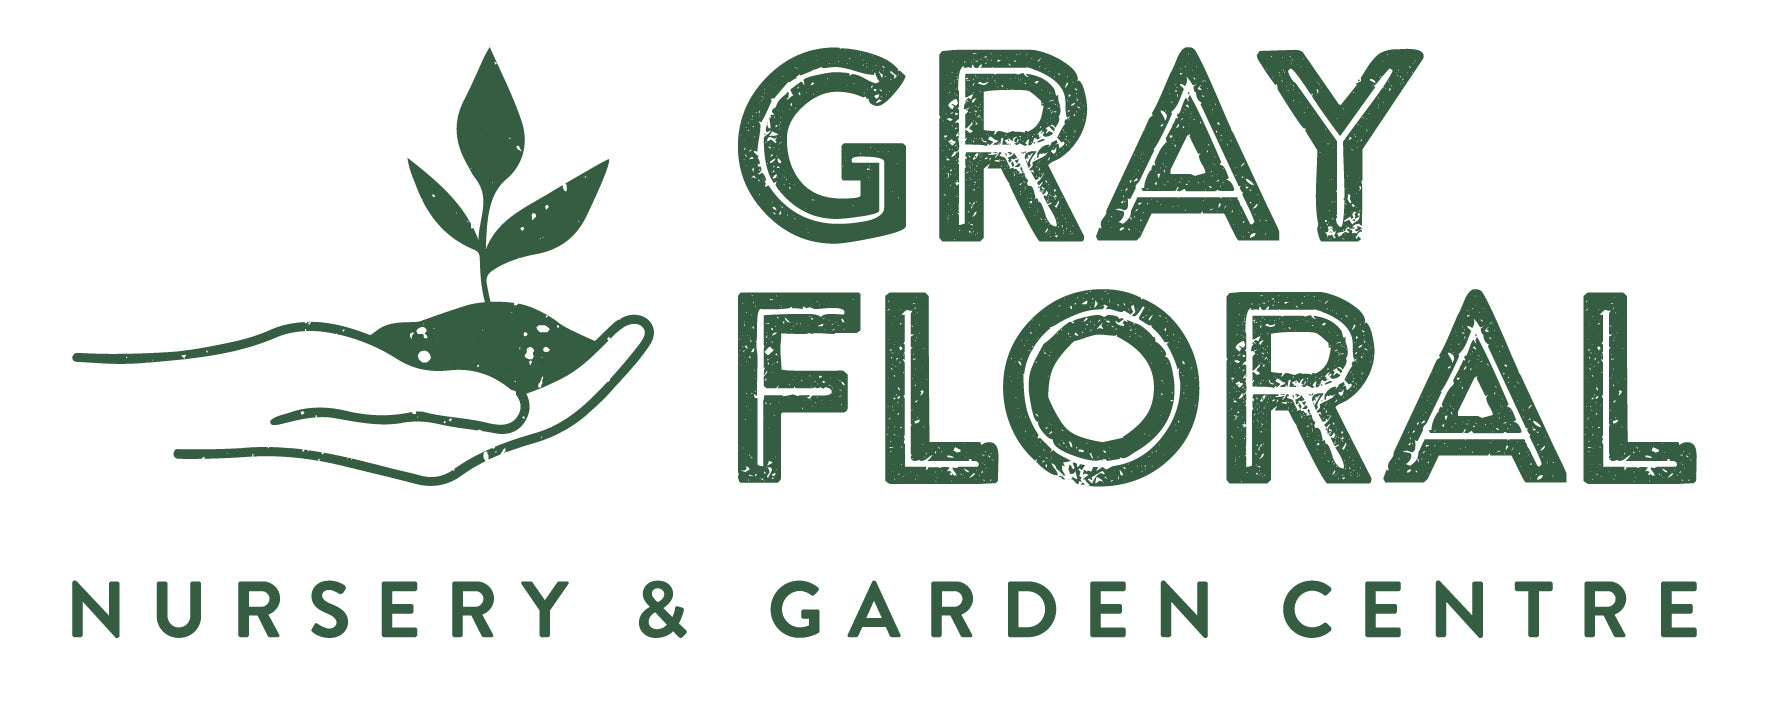 Gray Floral Nursery & Garden Logo